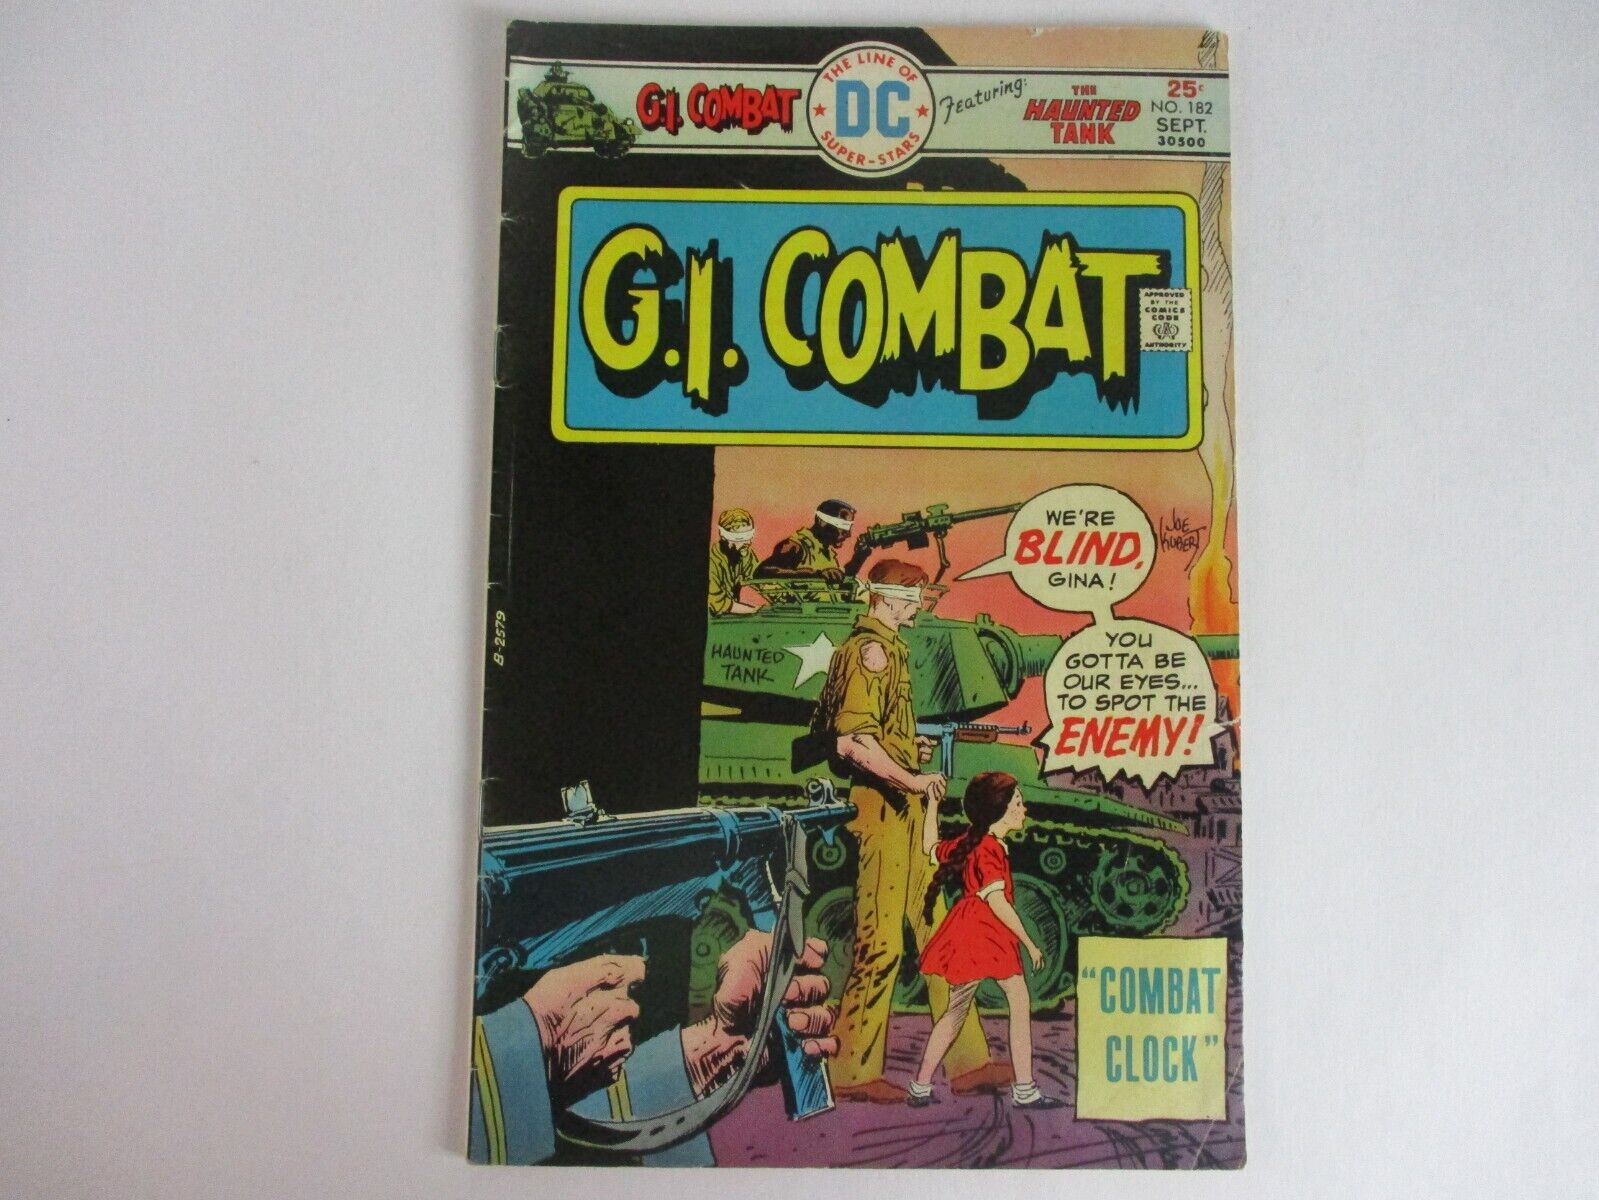 DC Comics G.I. COMBAT #182 1975 VG